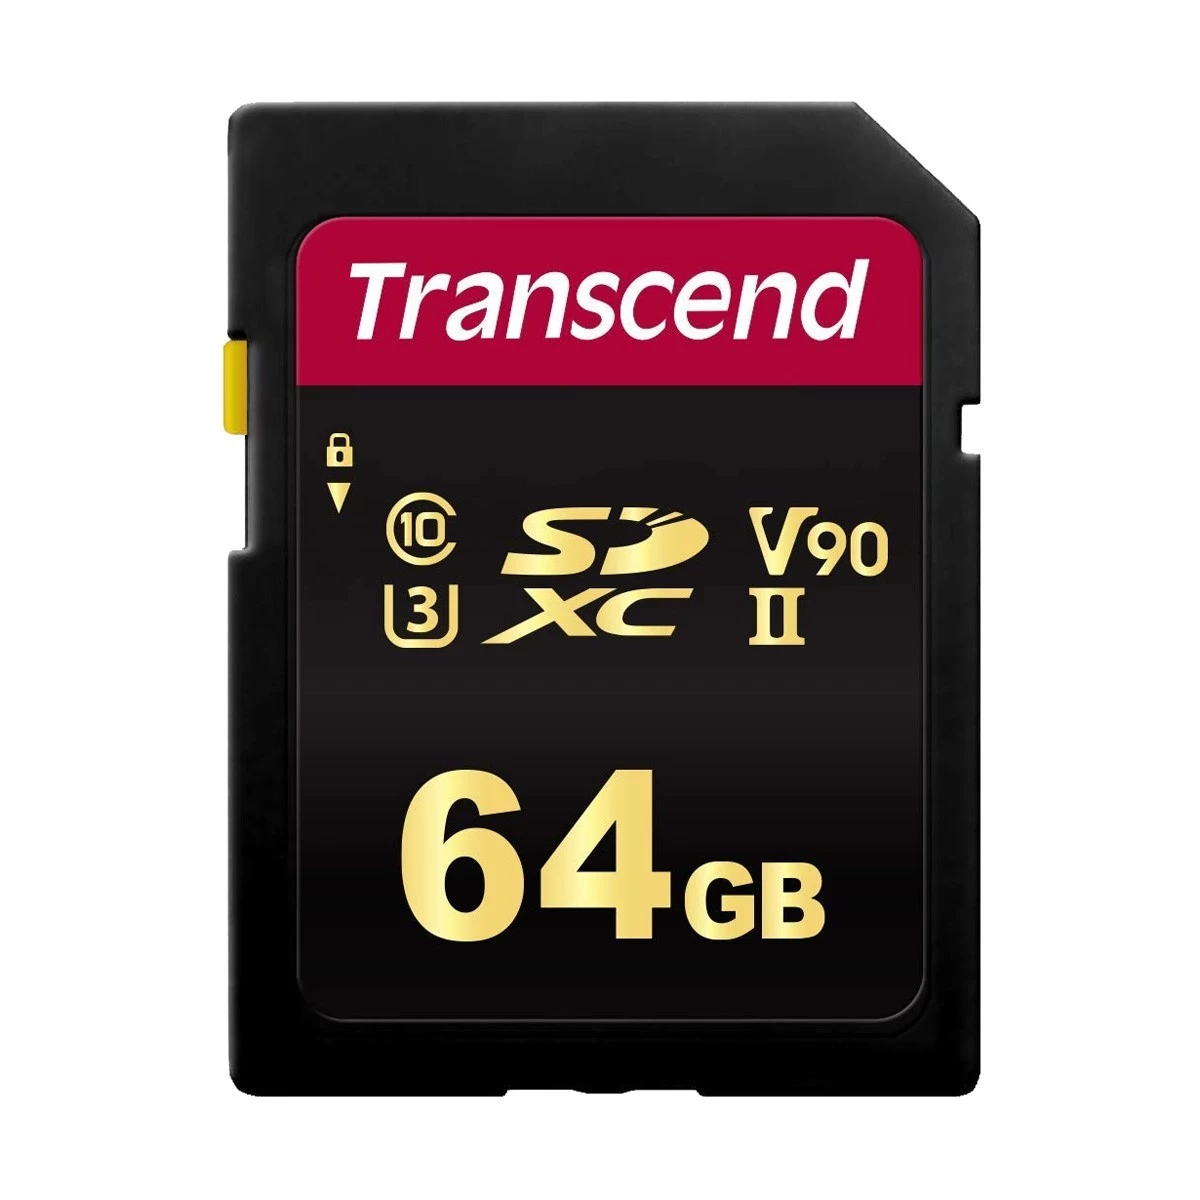 Transcend 700s Memory Card Price In Transcend Memory Card Ryans